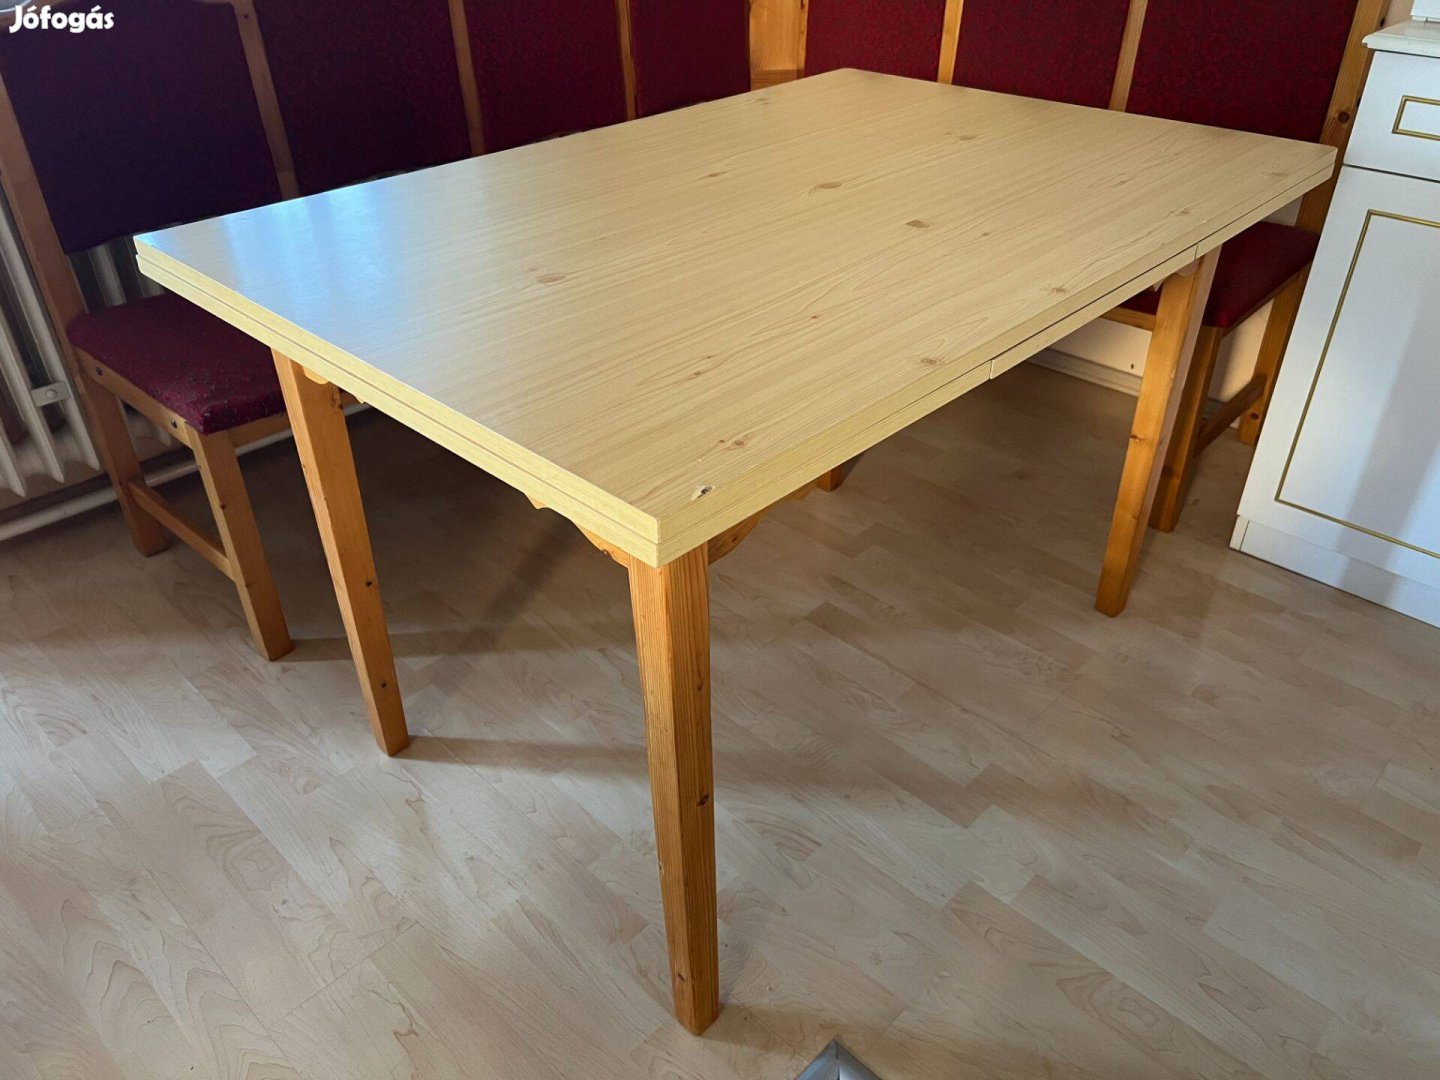 Étkező asztal, nagy méretű, kihúzható, 120x80 vagy 200x80 cm-es asztal